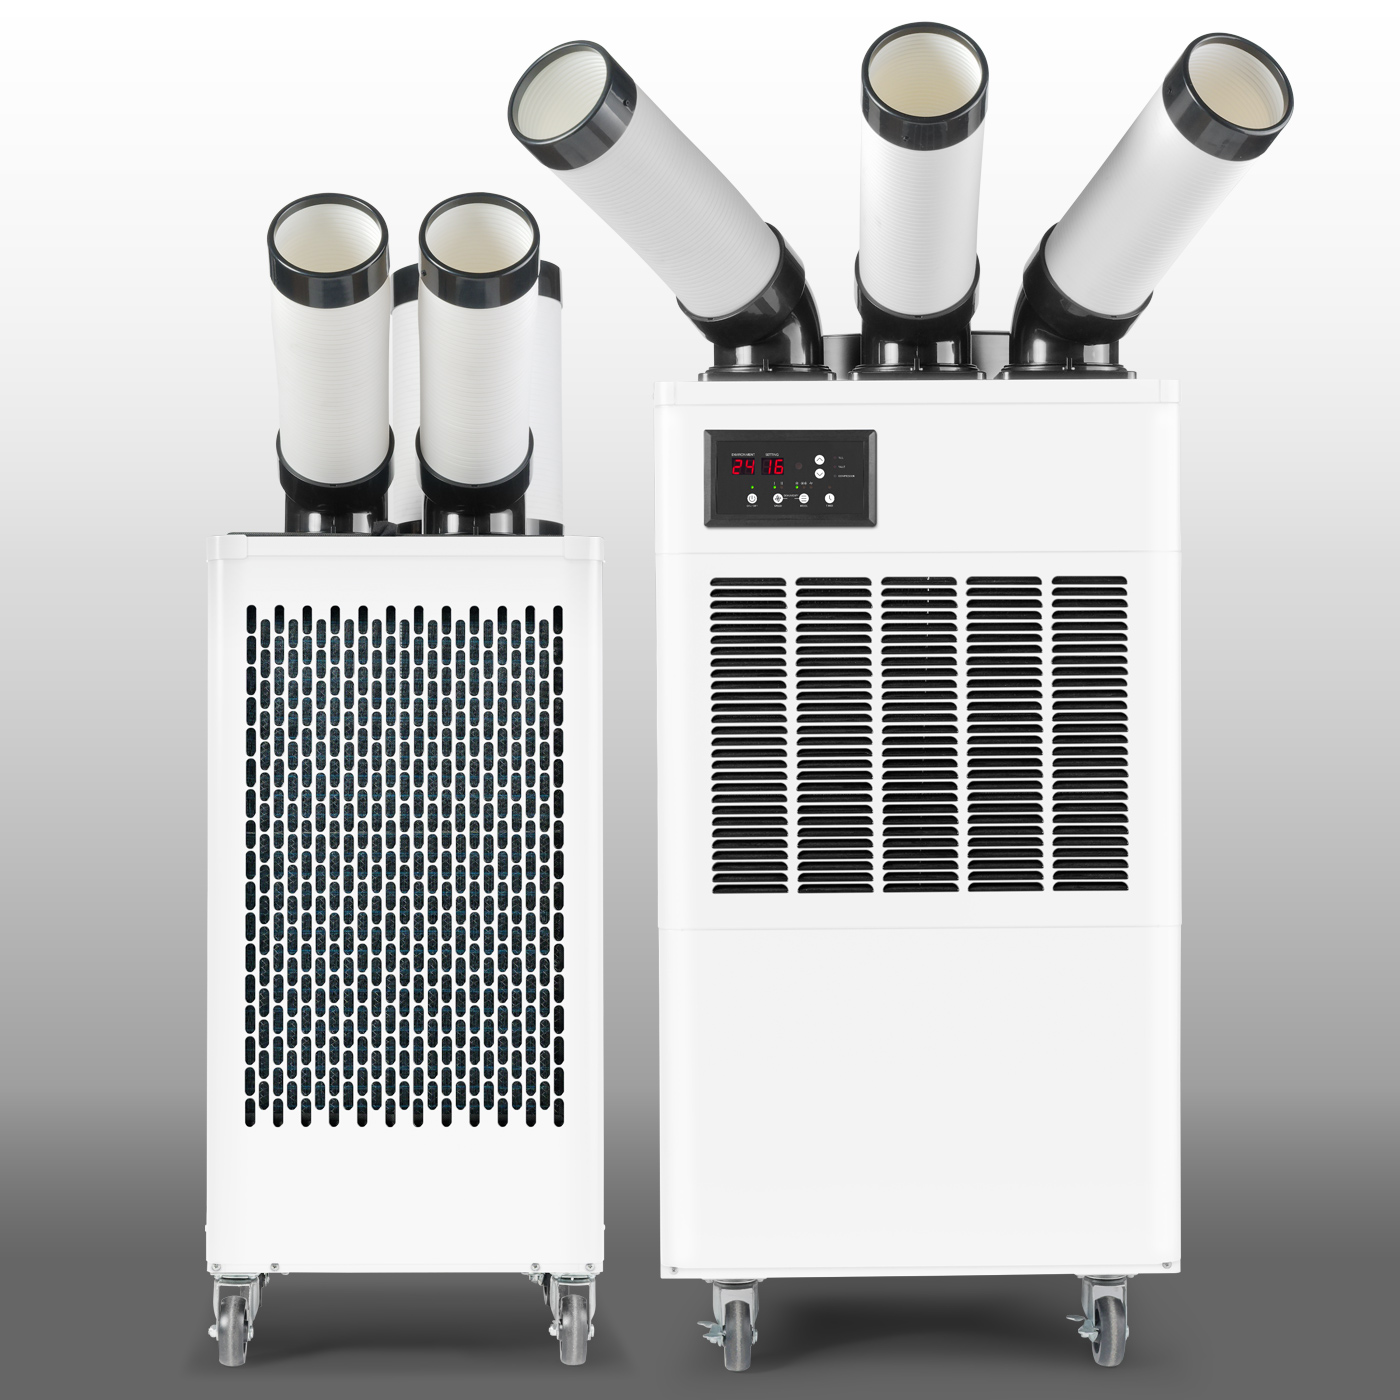 Die Spotcooler PT 3500 SP und PT 5300 SP können neben der Punktkühlung auch zur Raumluftkühlung, Belüftung ohne Kühlfunktion oder Entfeuchtung eingesetzt werden